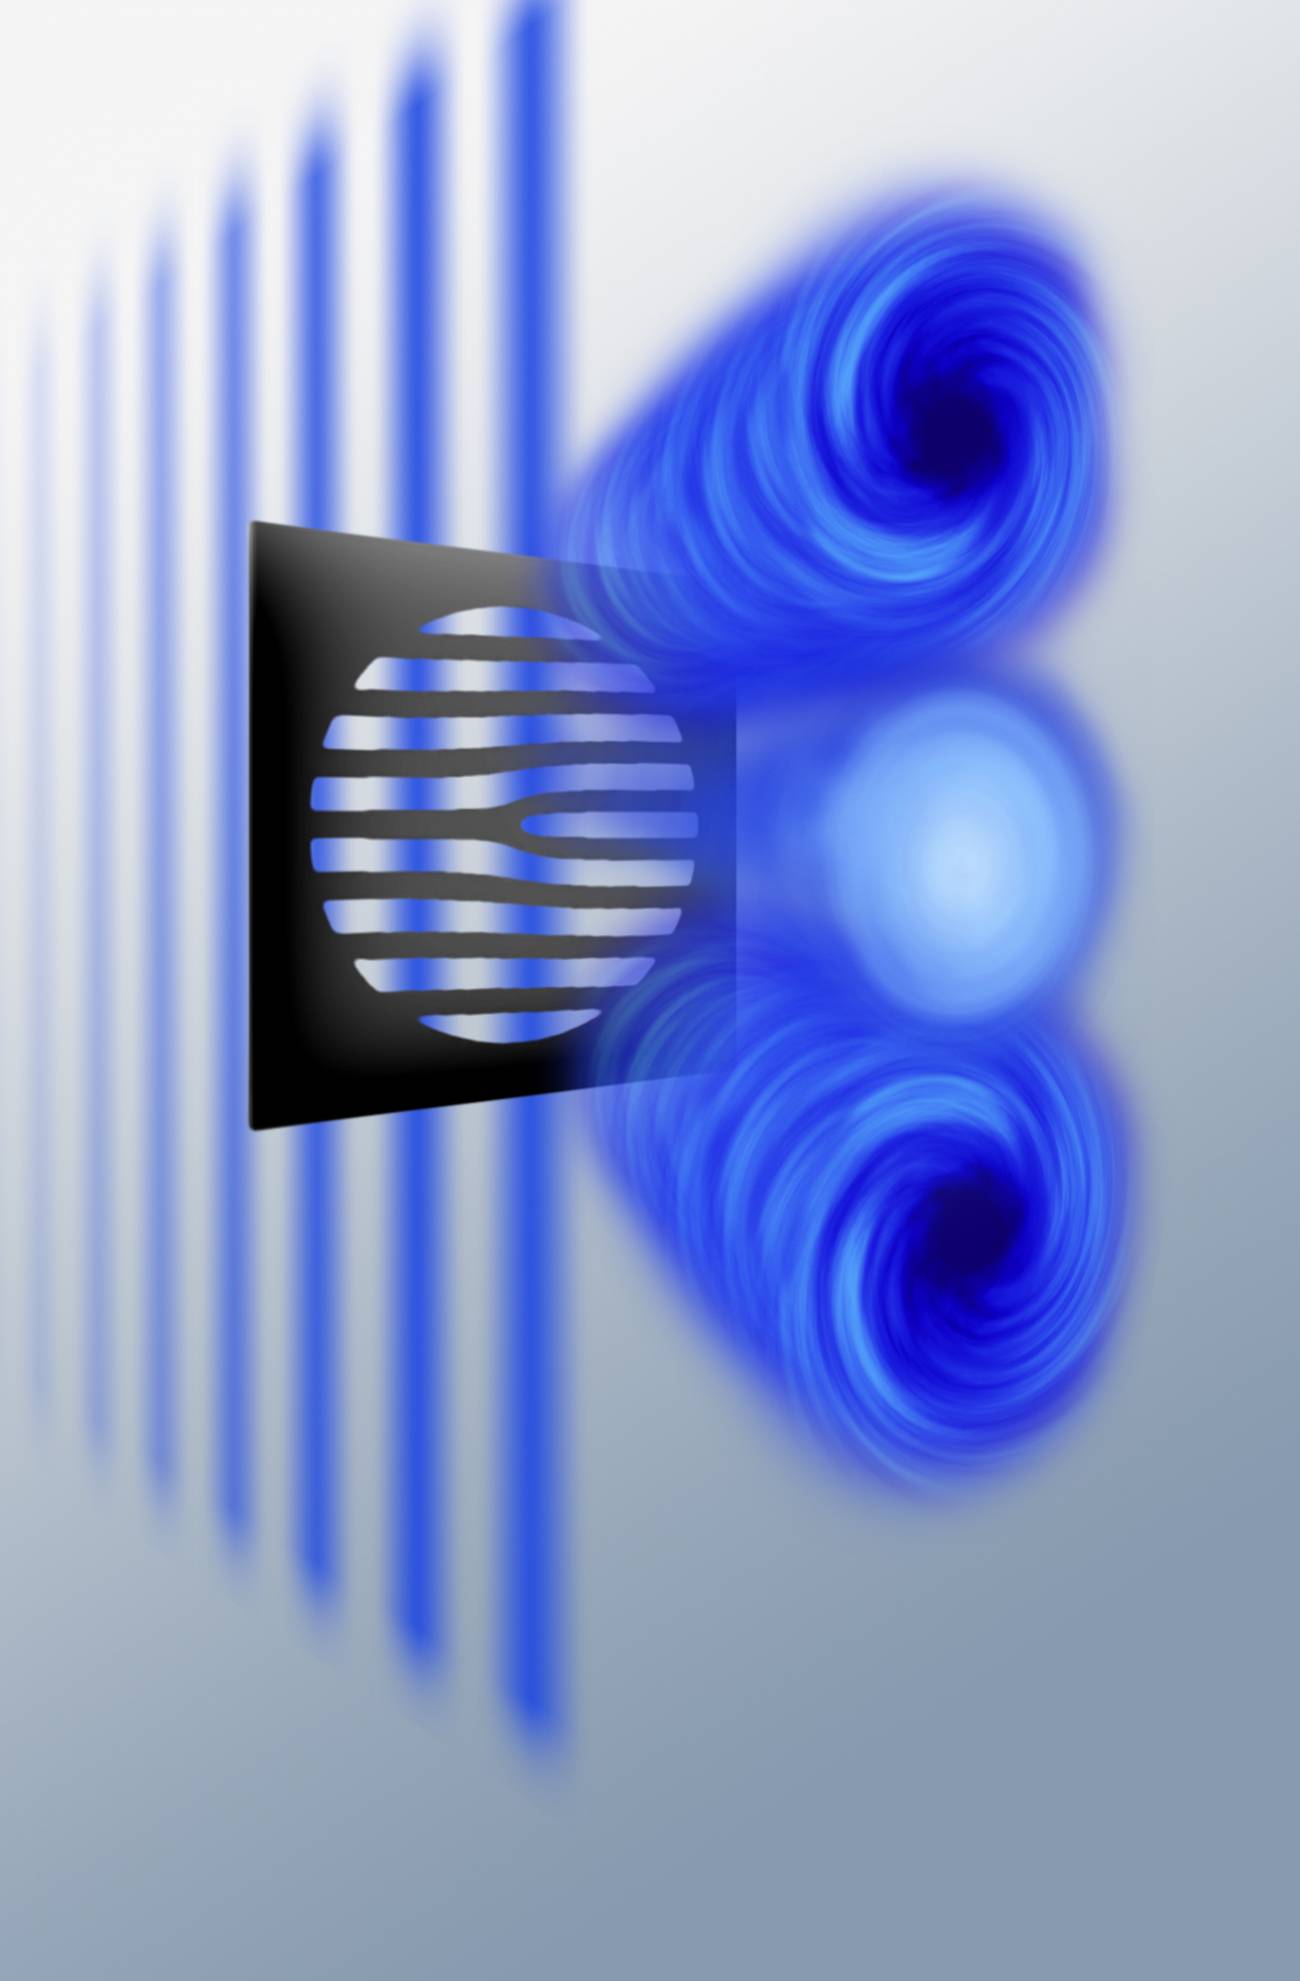 Un "torbellino" de electrones para estudiar la materia